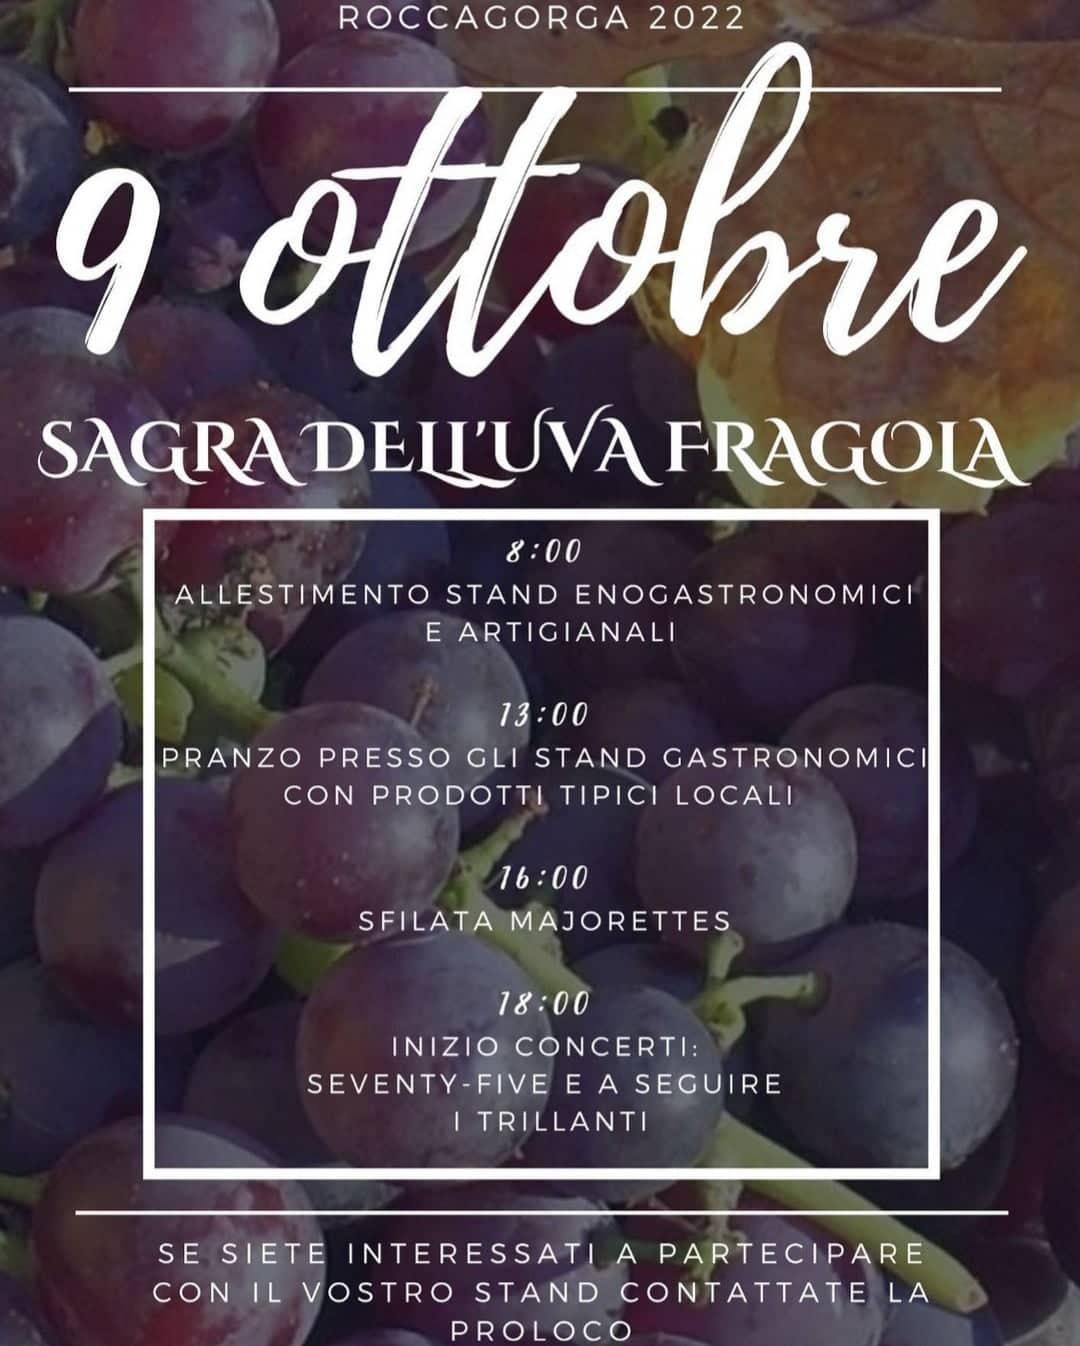 Roccagorga: Sagra dell'uva fragola @ Roccagorga